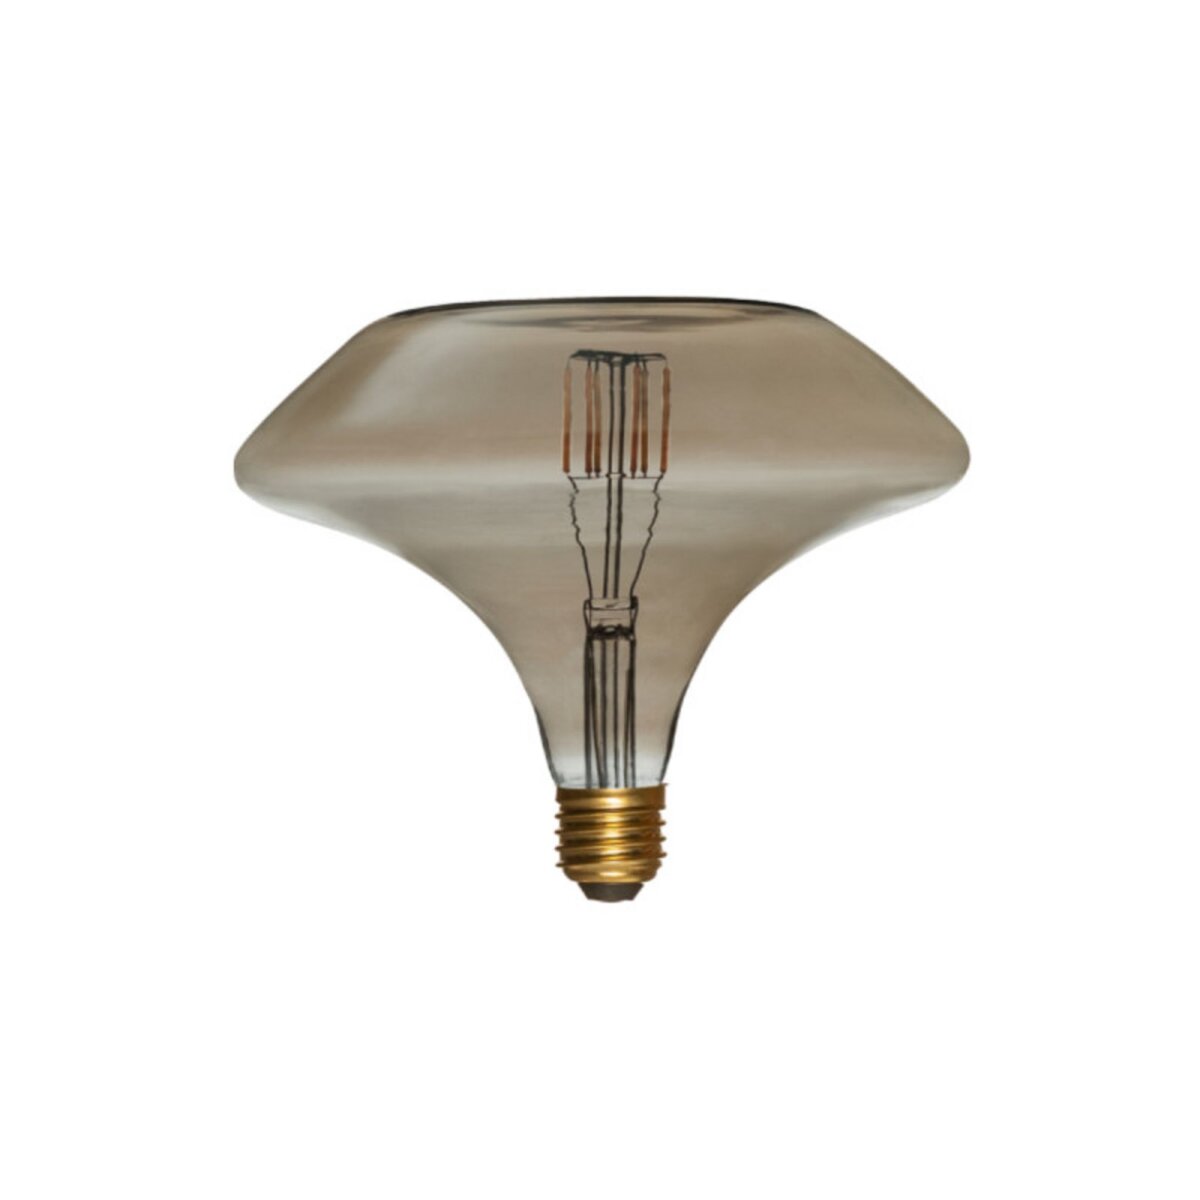  Ampoule LED soucoupe à filament grise XXCELL - 8 W - 650 lumens - 4000 K - E27